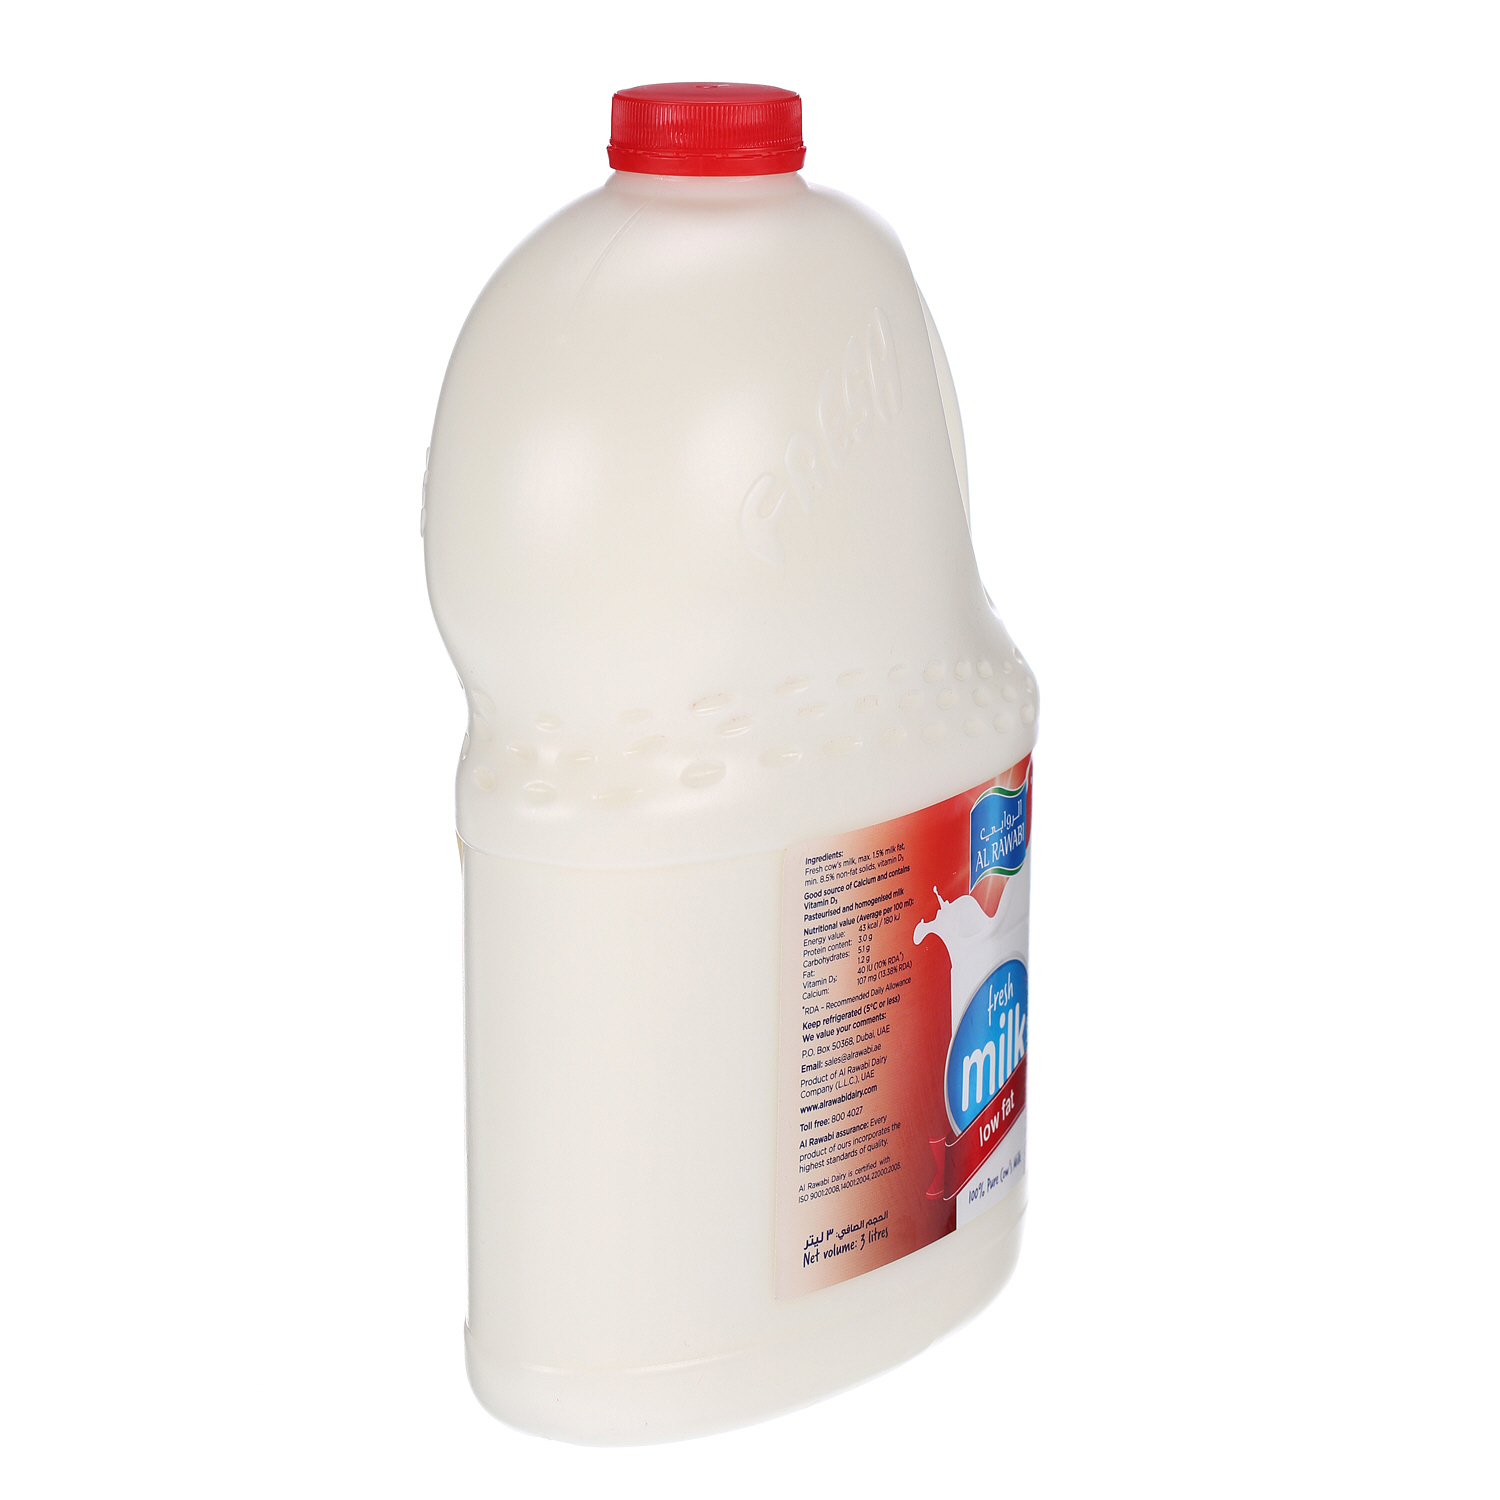 Al Rawabi Fresh Milk Low Fat 3Ltr